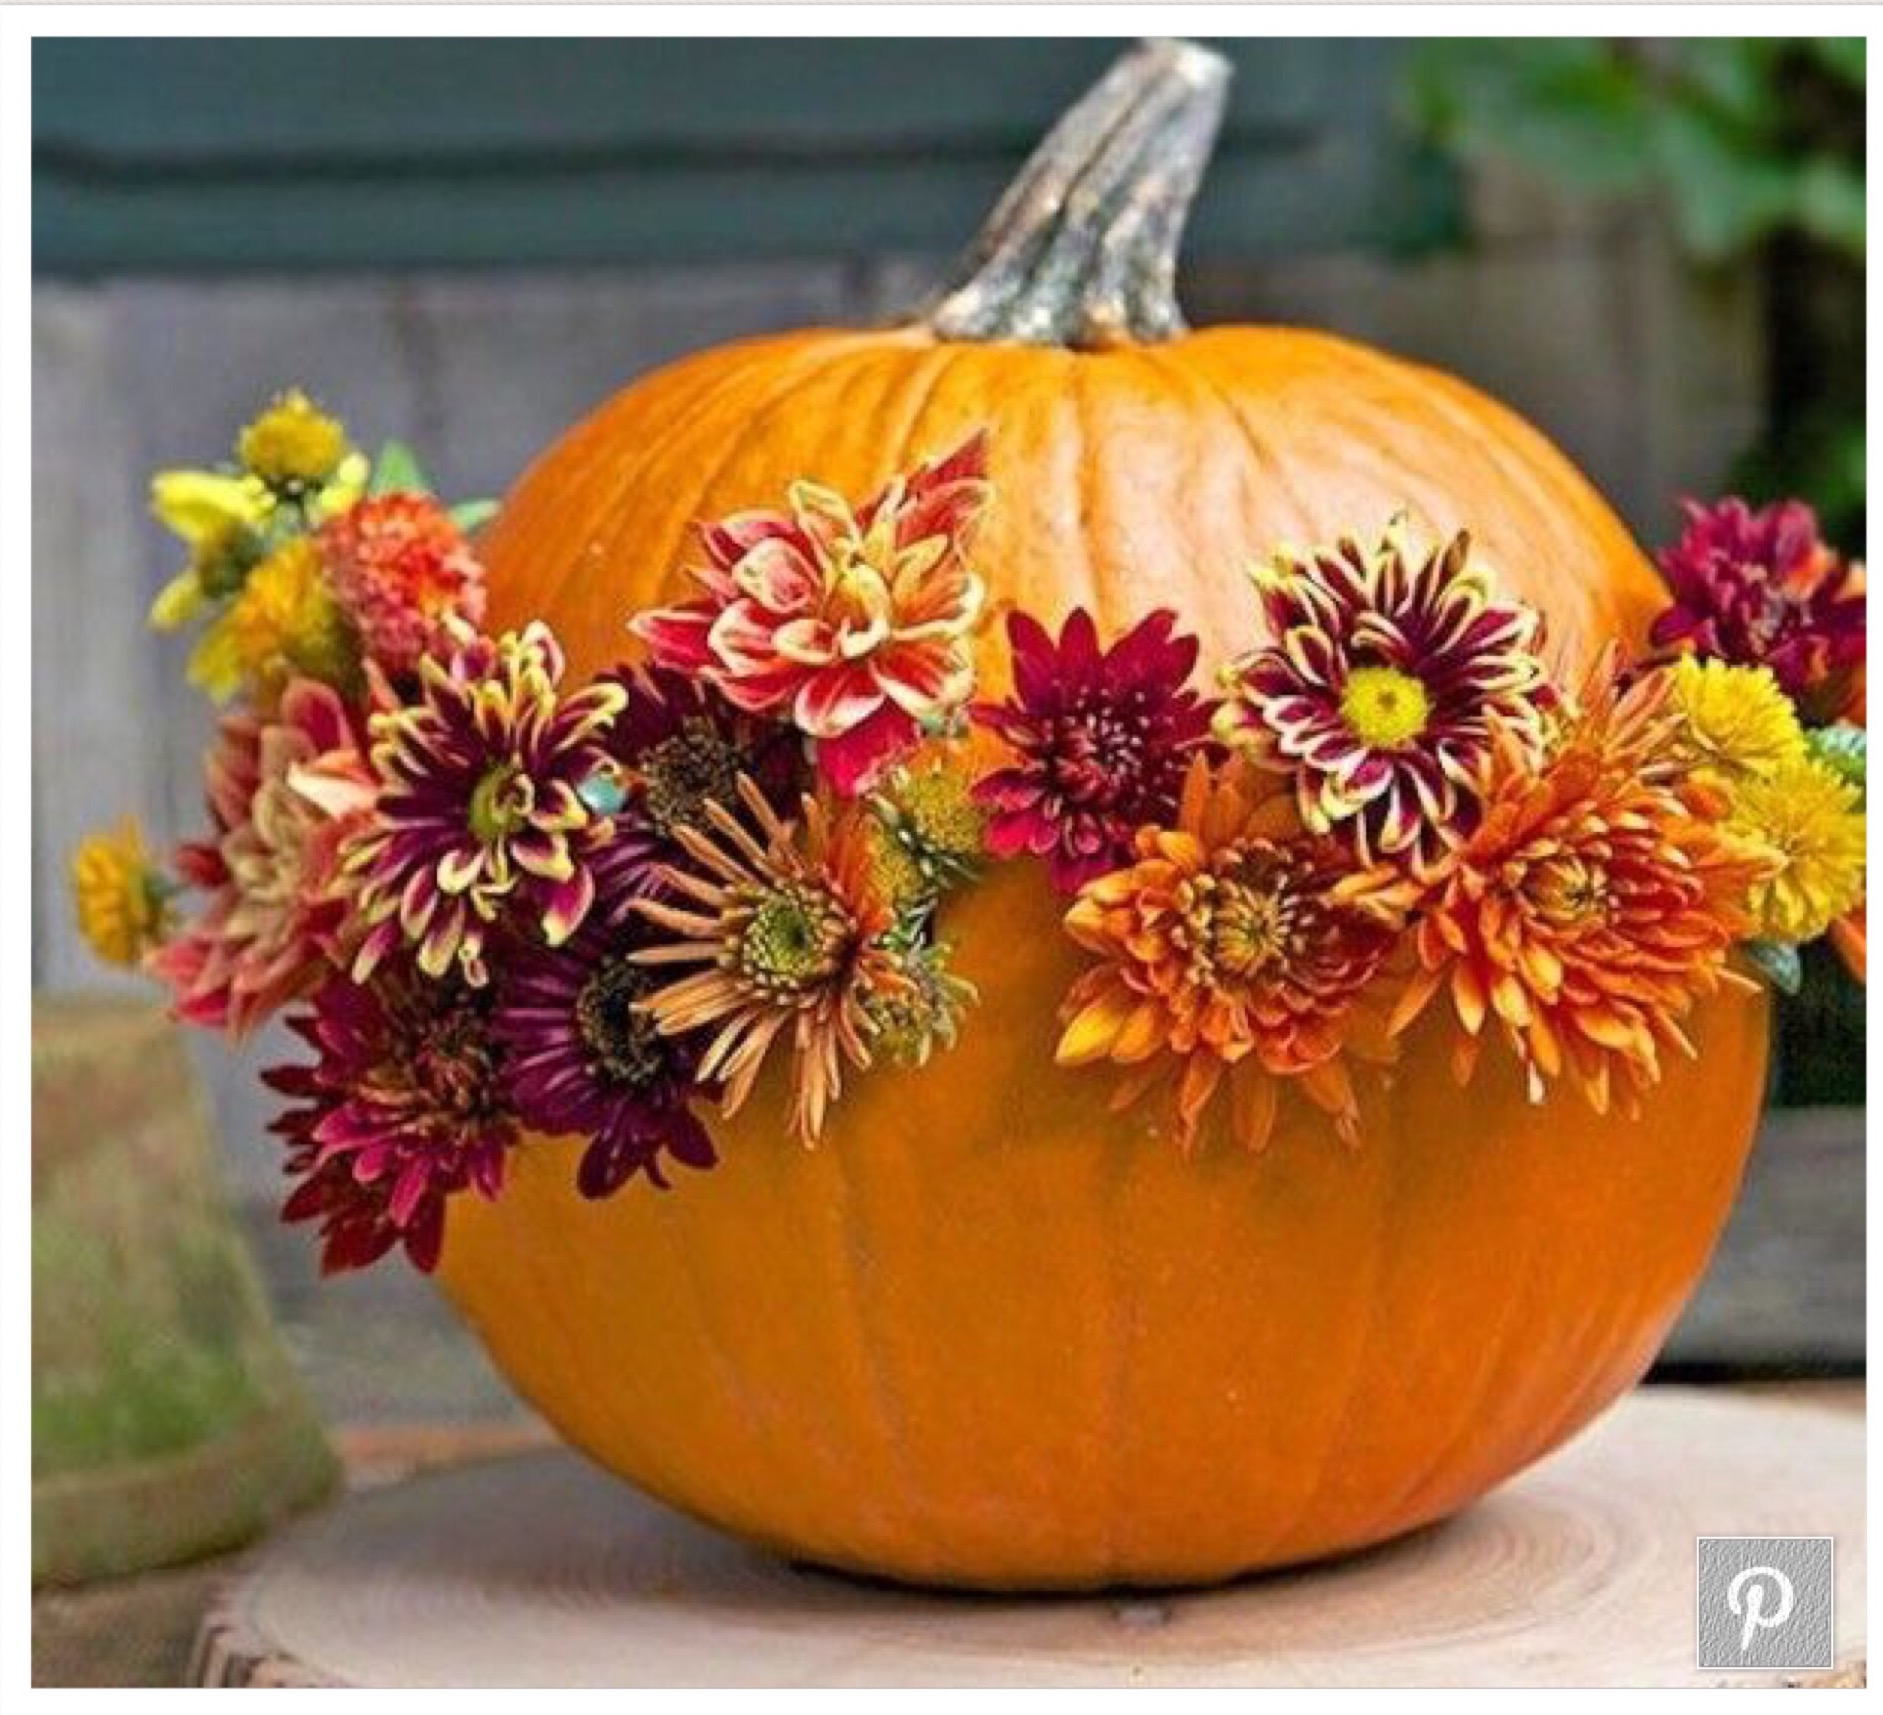 Flower Arrangement with pumpkins